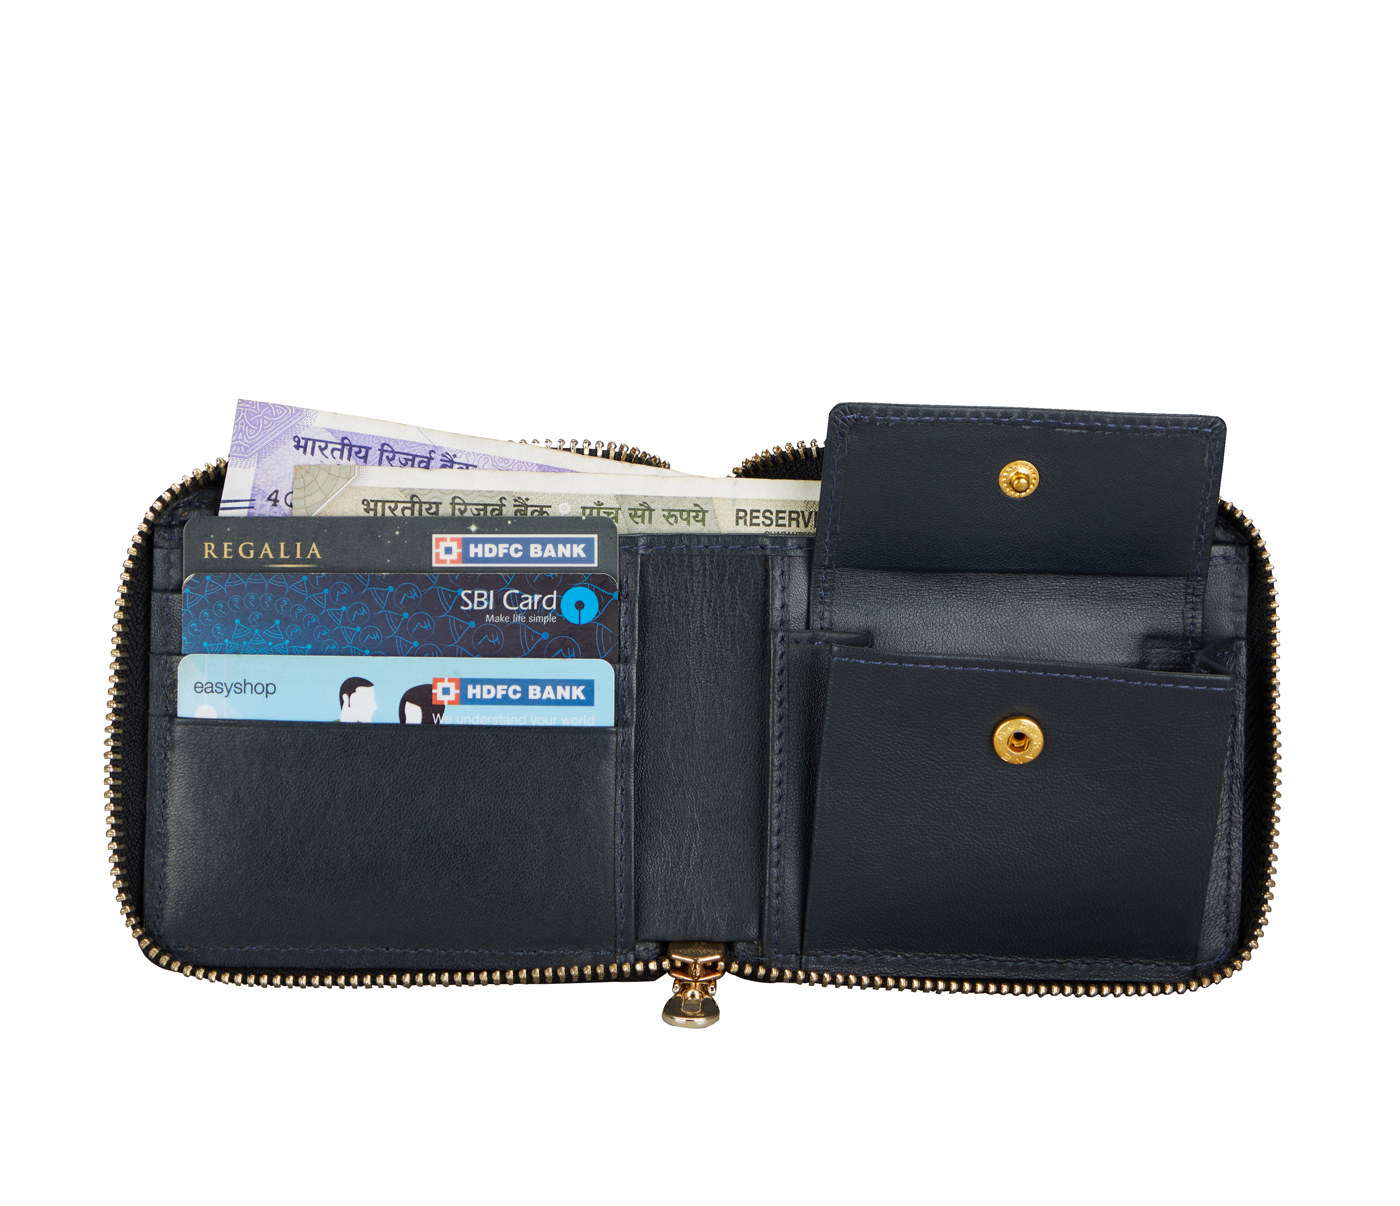 W325-Denzel-Men's bifold zip wallet in Genuine Leather - Blue